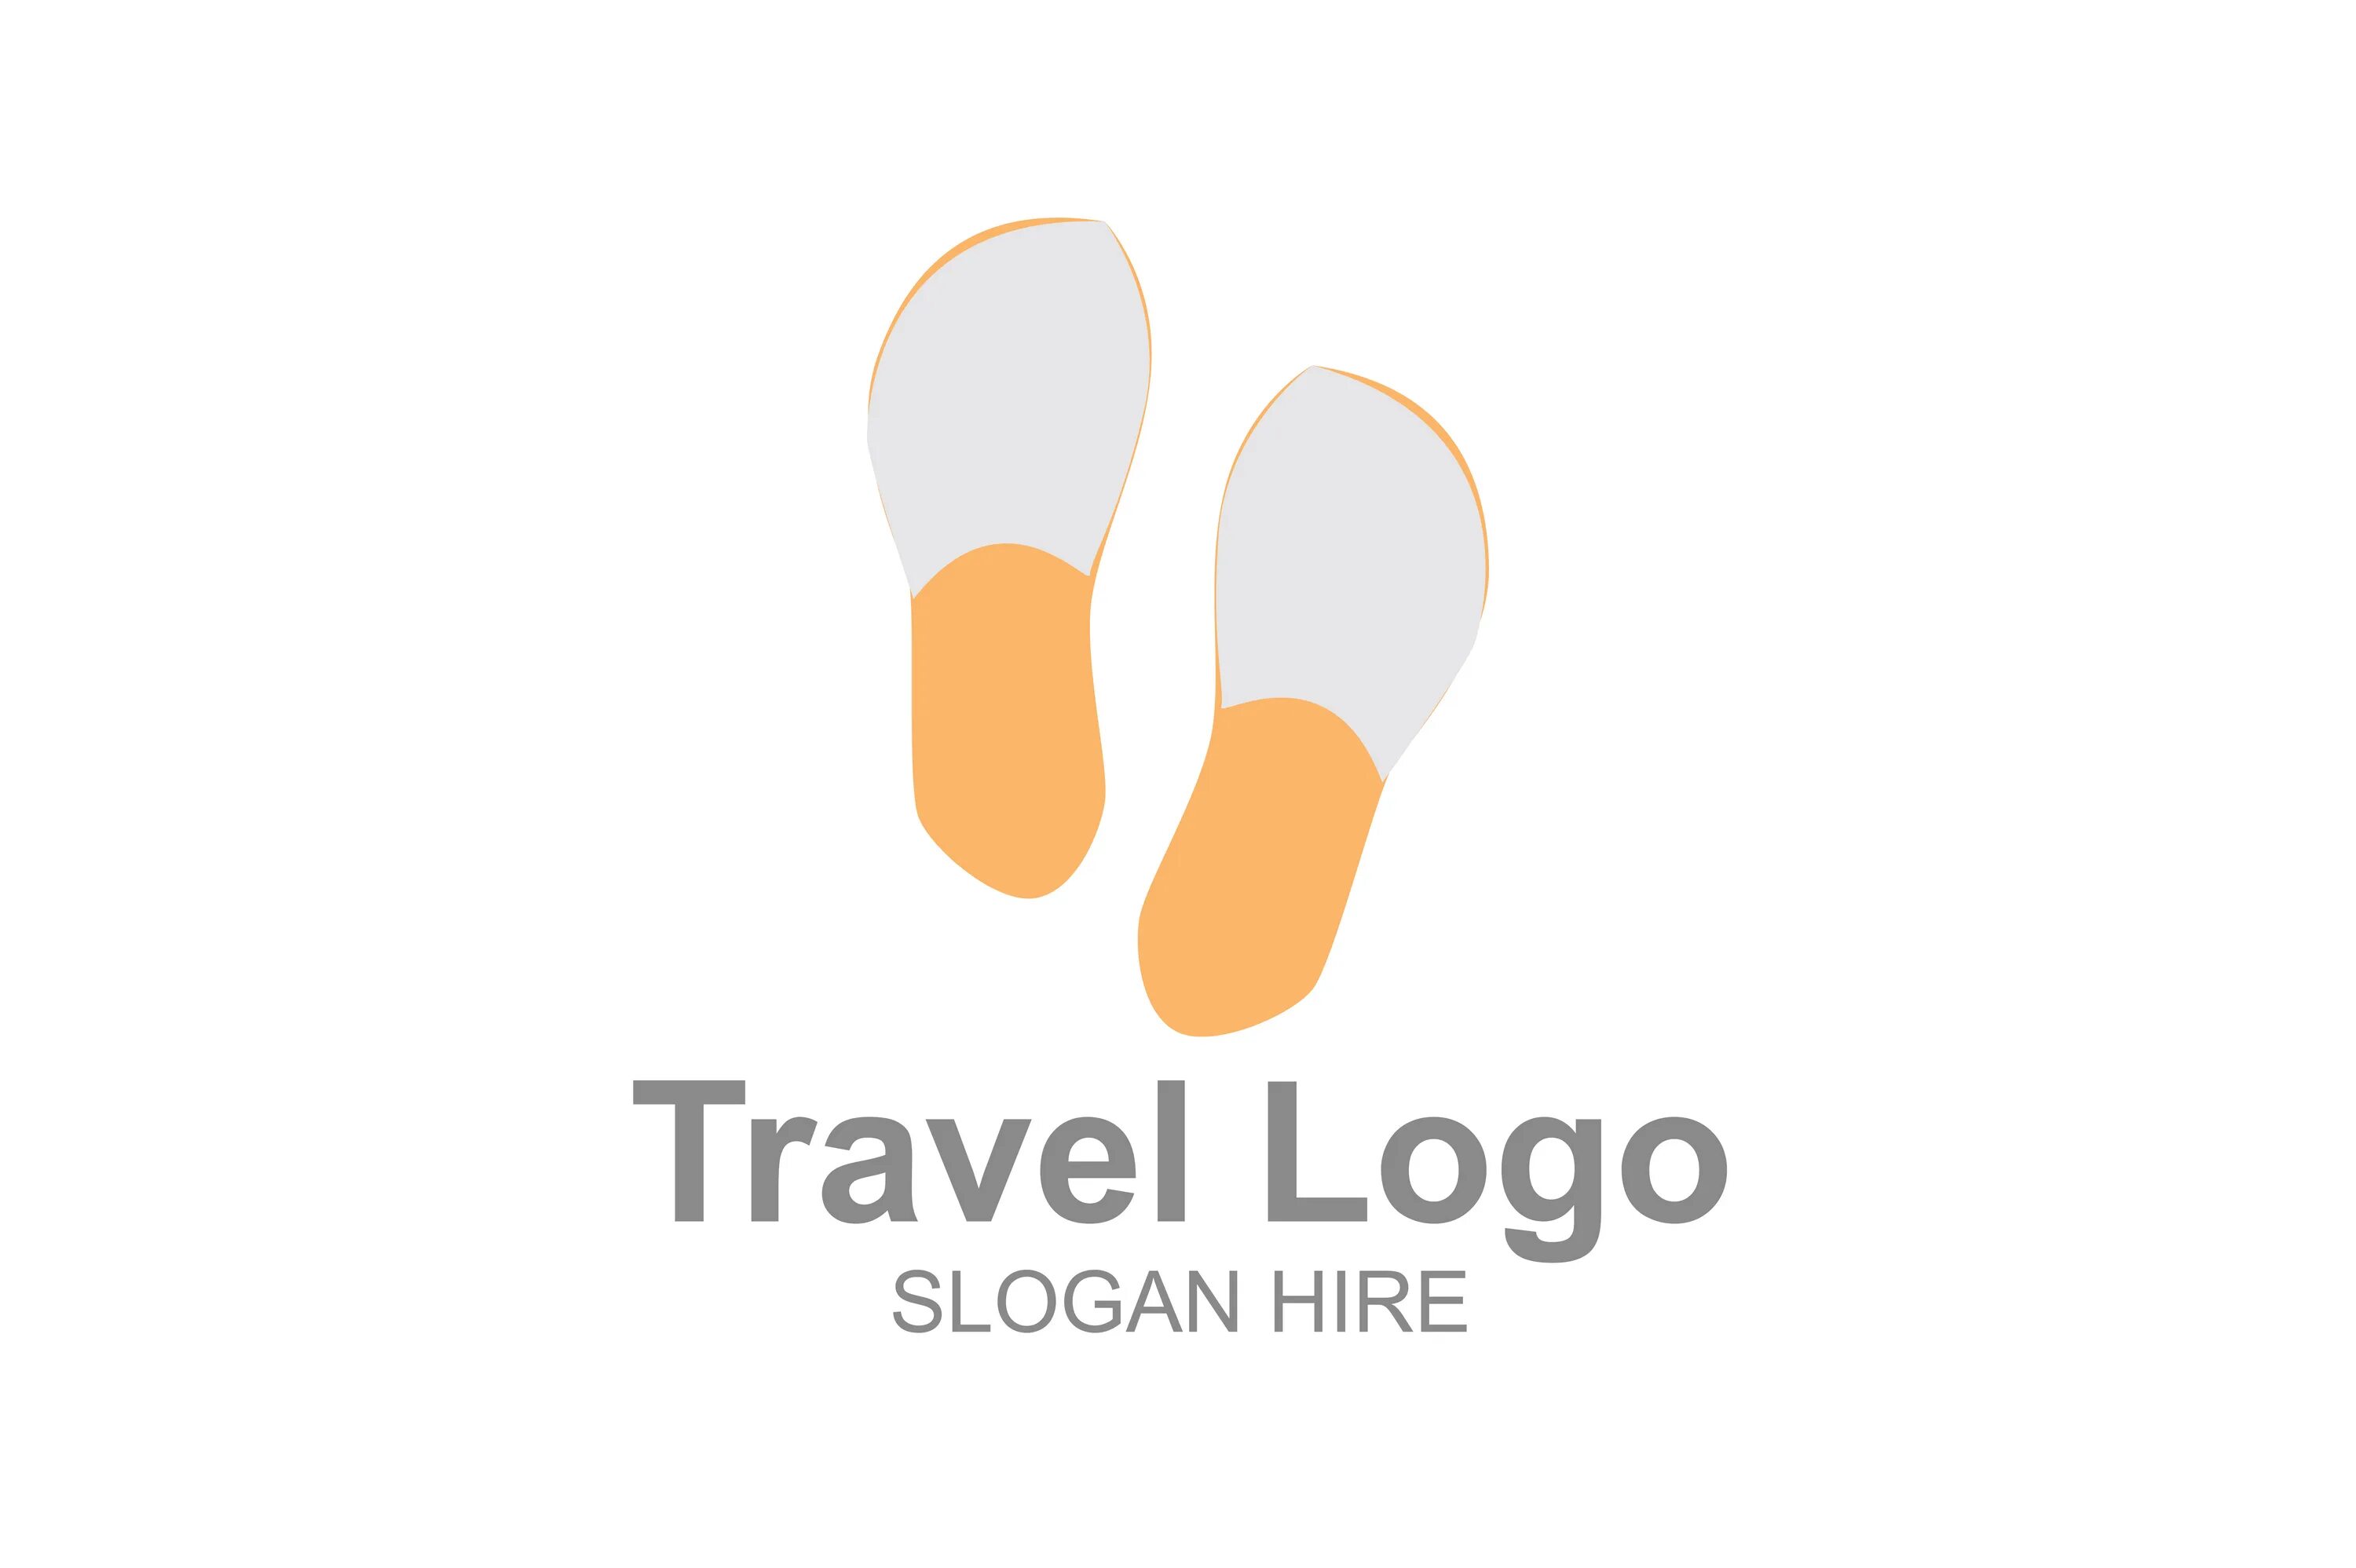 Тревел лого. Da Travel лого. Travel Creative logo. Логотип my Travel. Fabrica creative